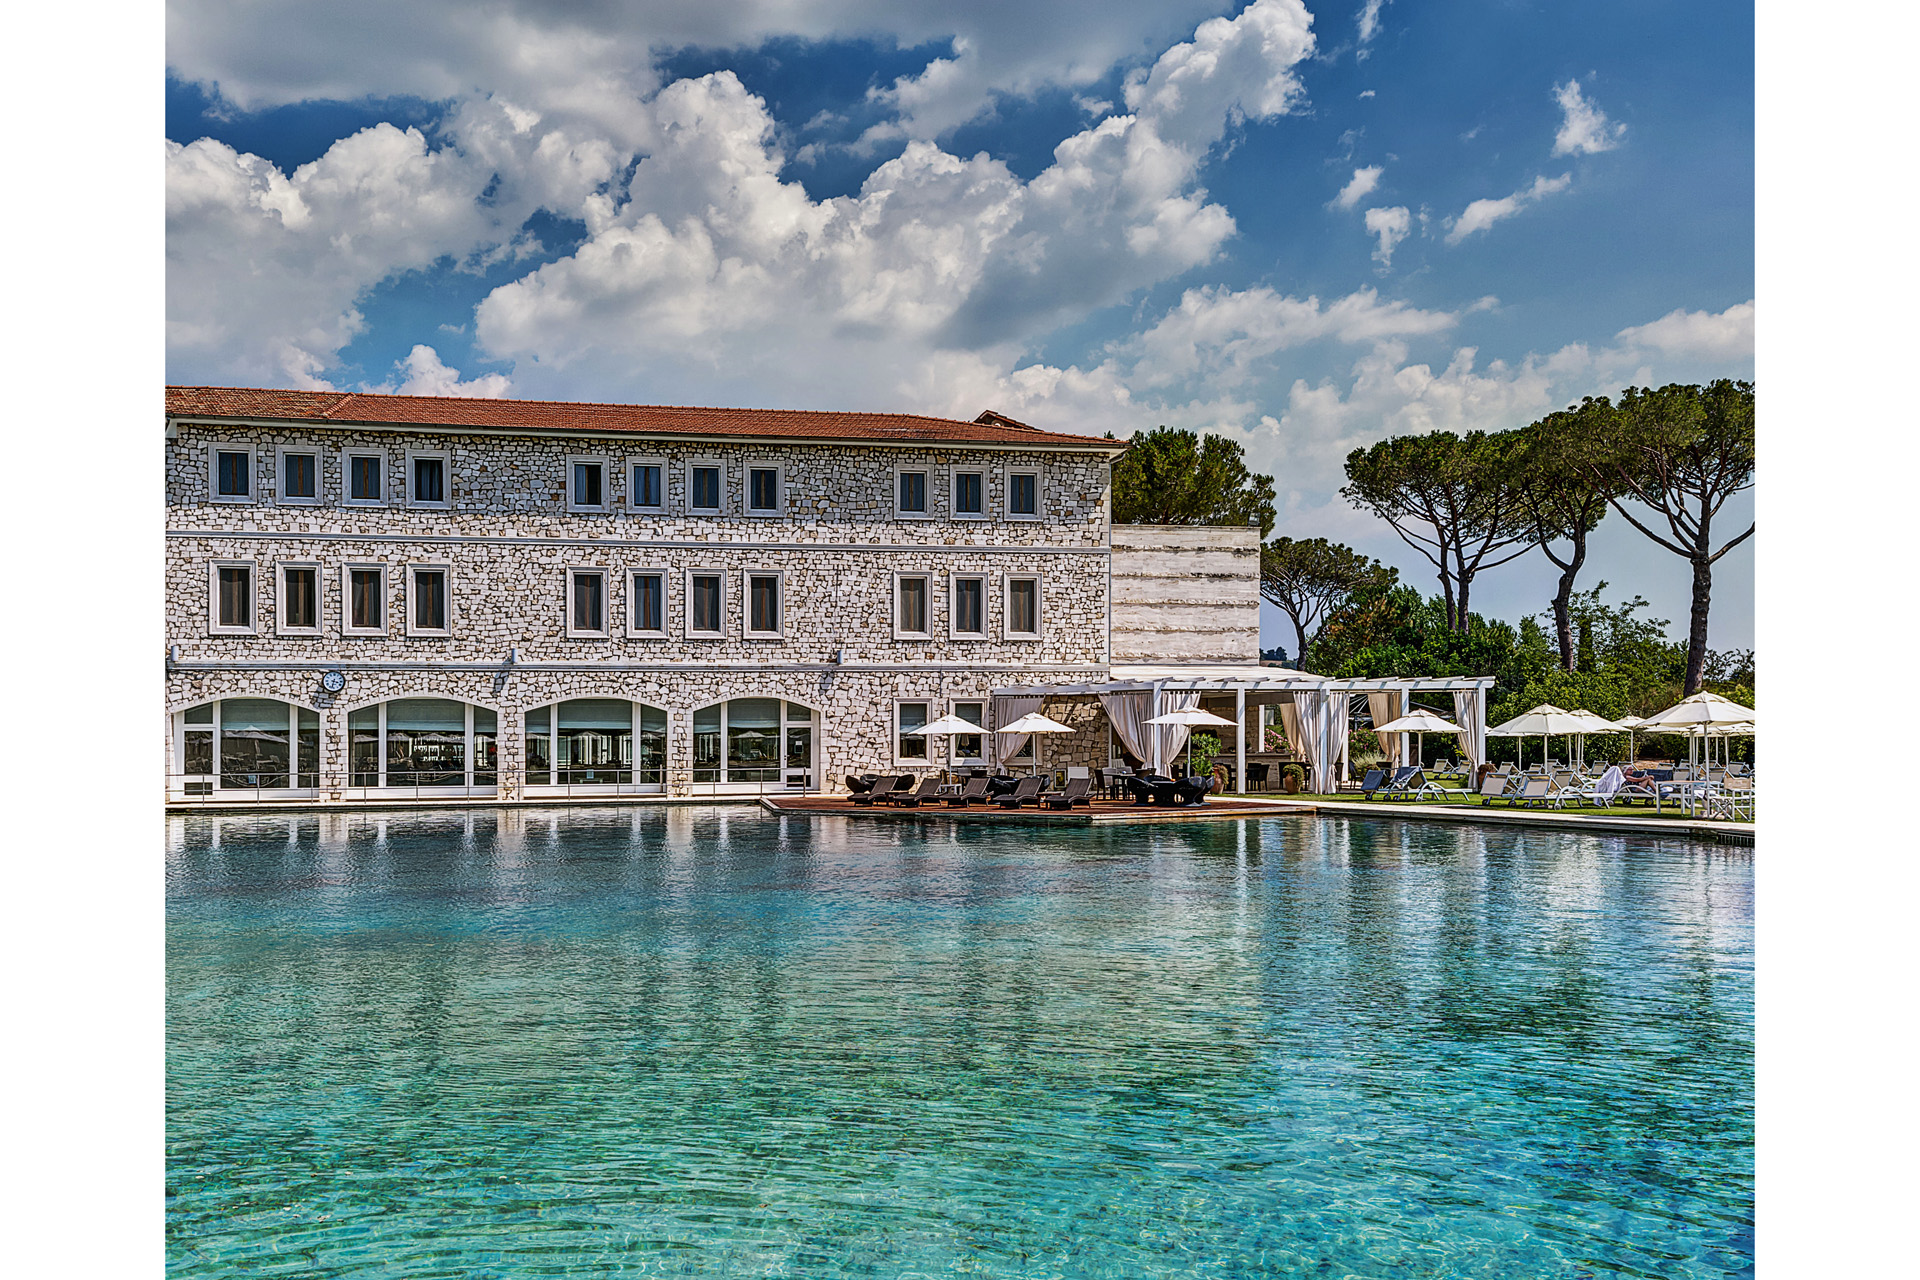 The thermal spring at Terme di Saturnia Hotel Resort & Spa